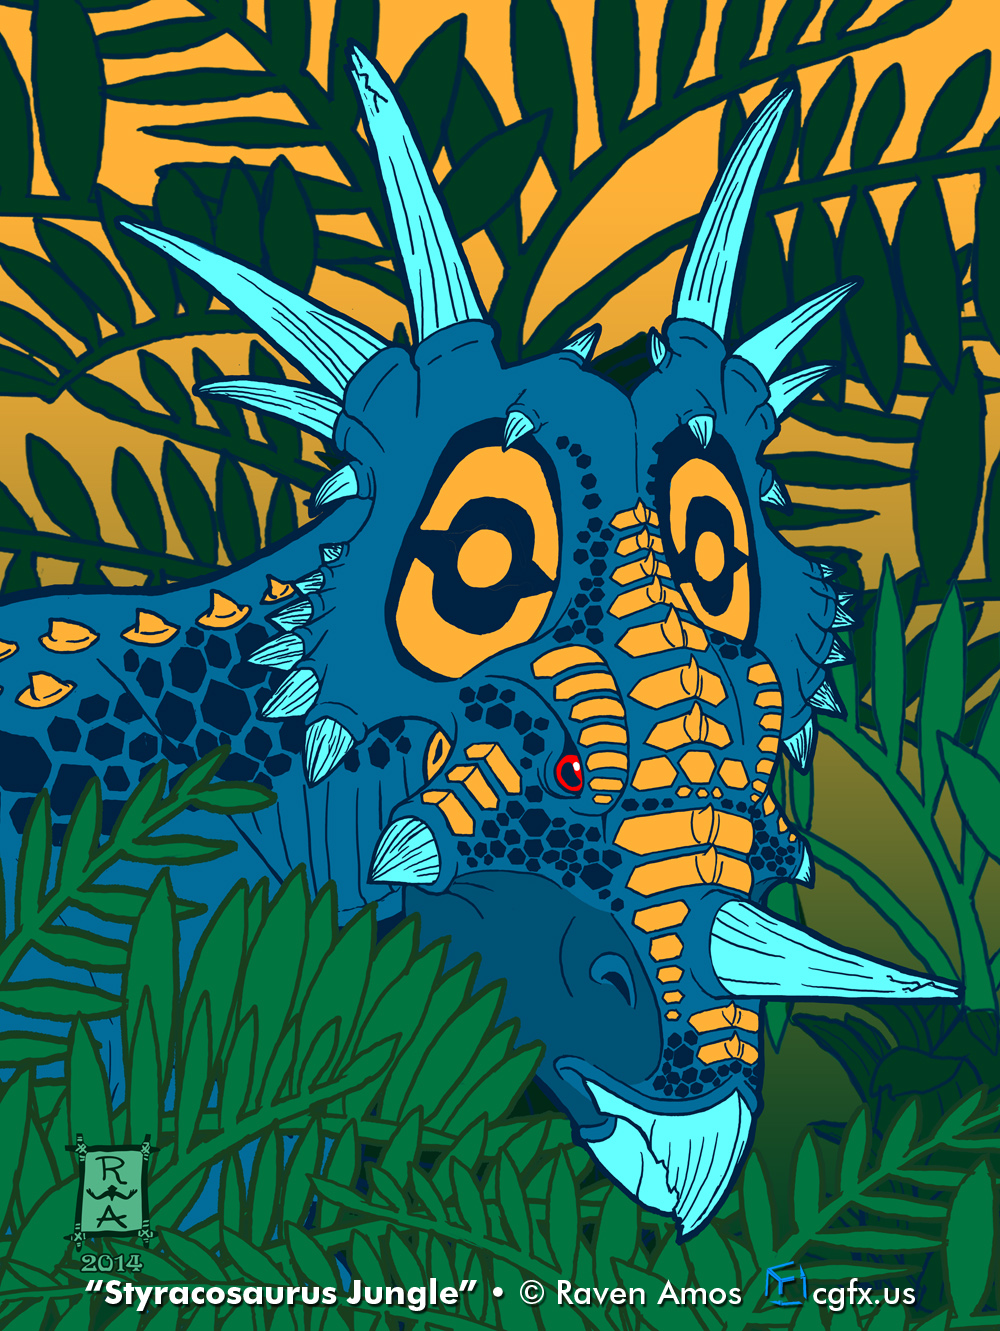 Styracosaurus Jungle